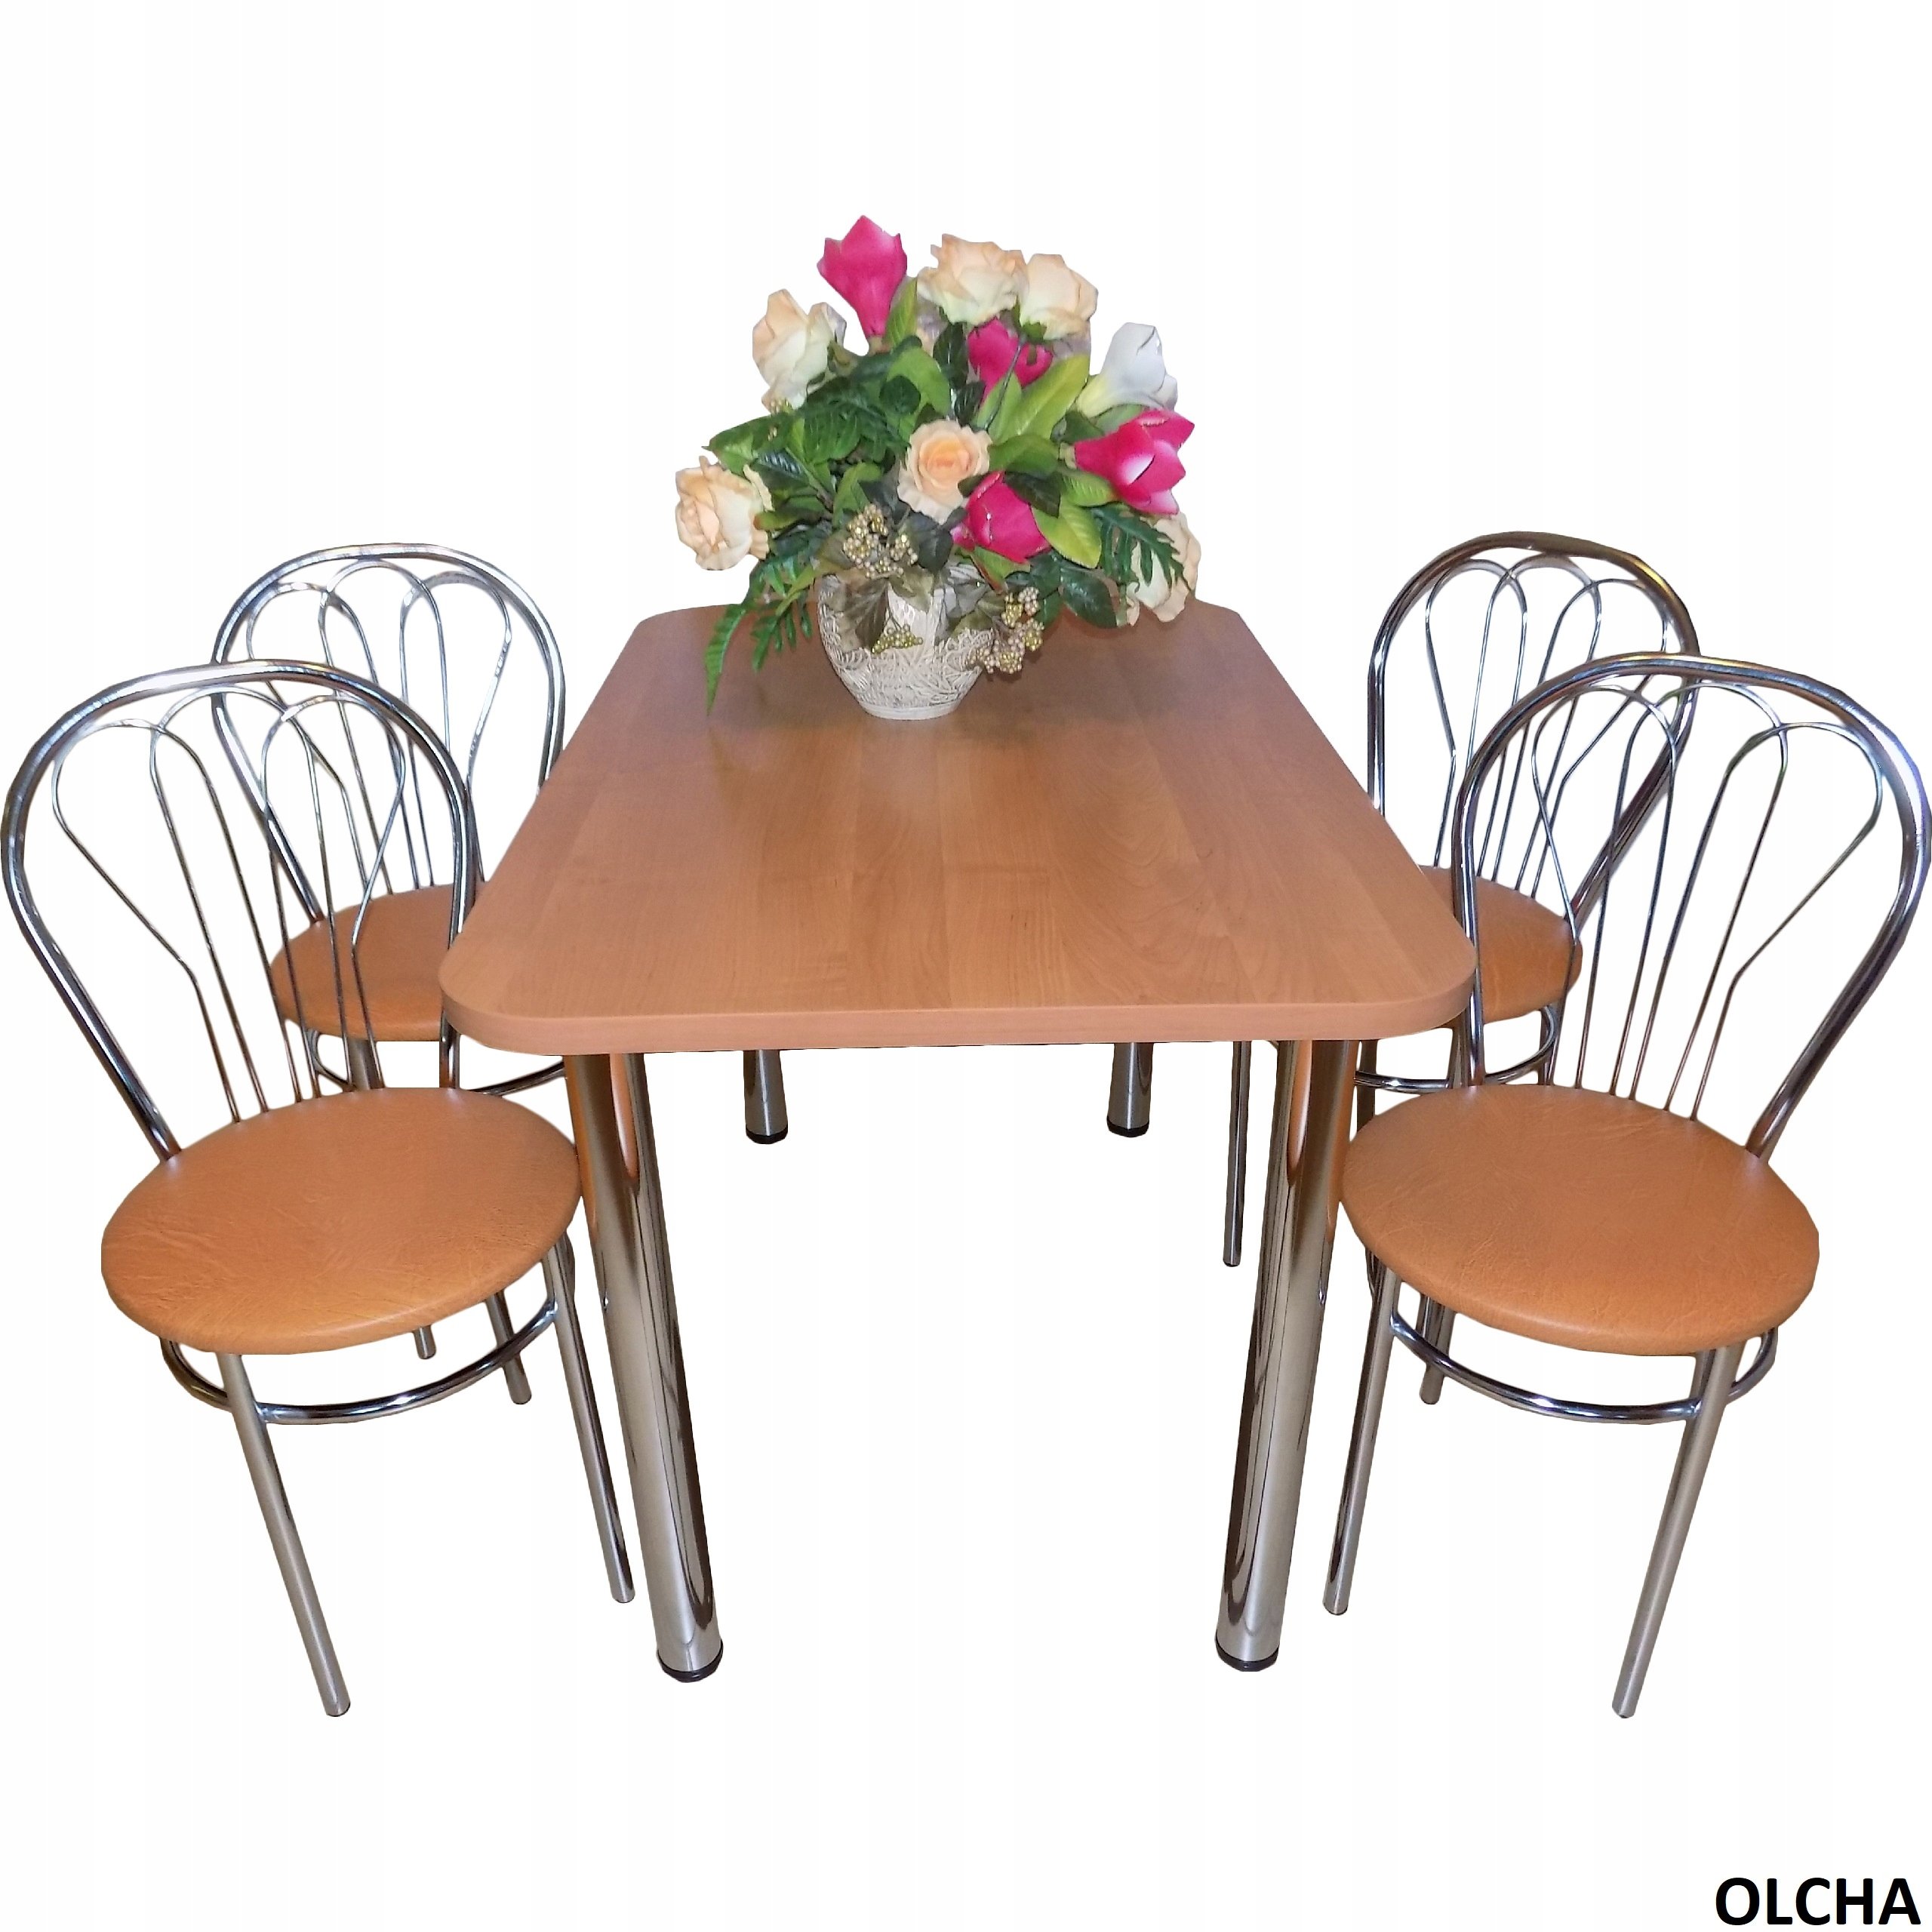 Кухонный комплект стол и стулья. Кухонный стол и стулья. Кухонный набор стол и стулья. Кухонный столик со стульями. Кухонный стол и стулья комплект.